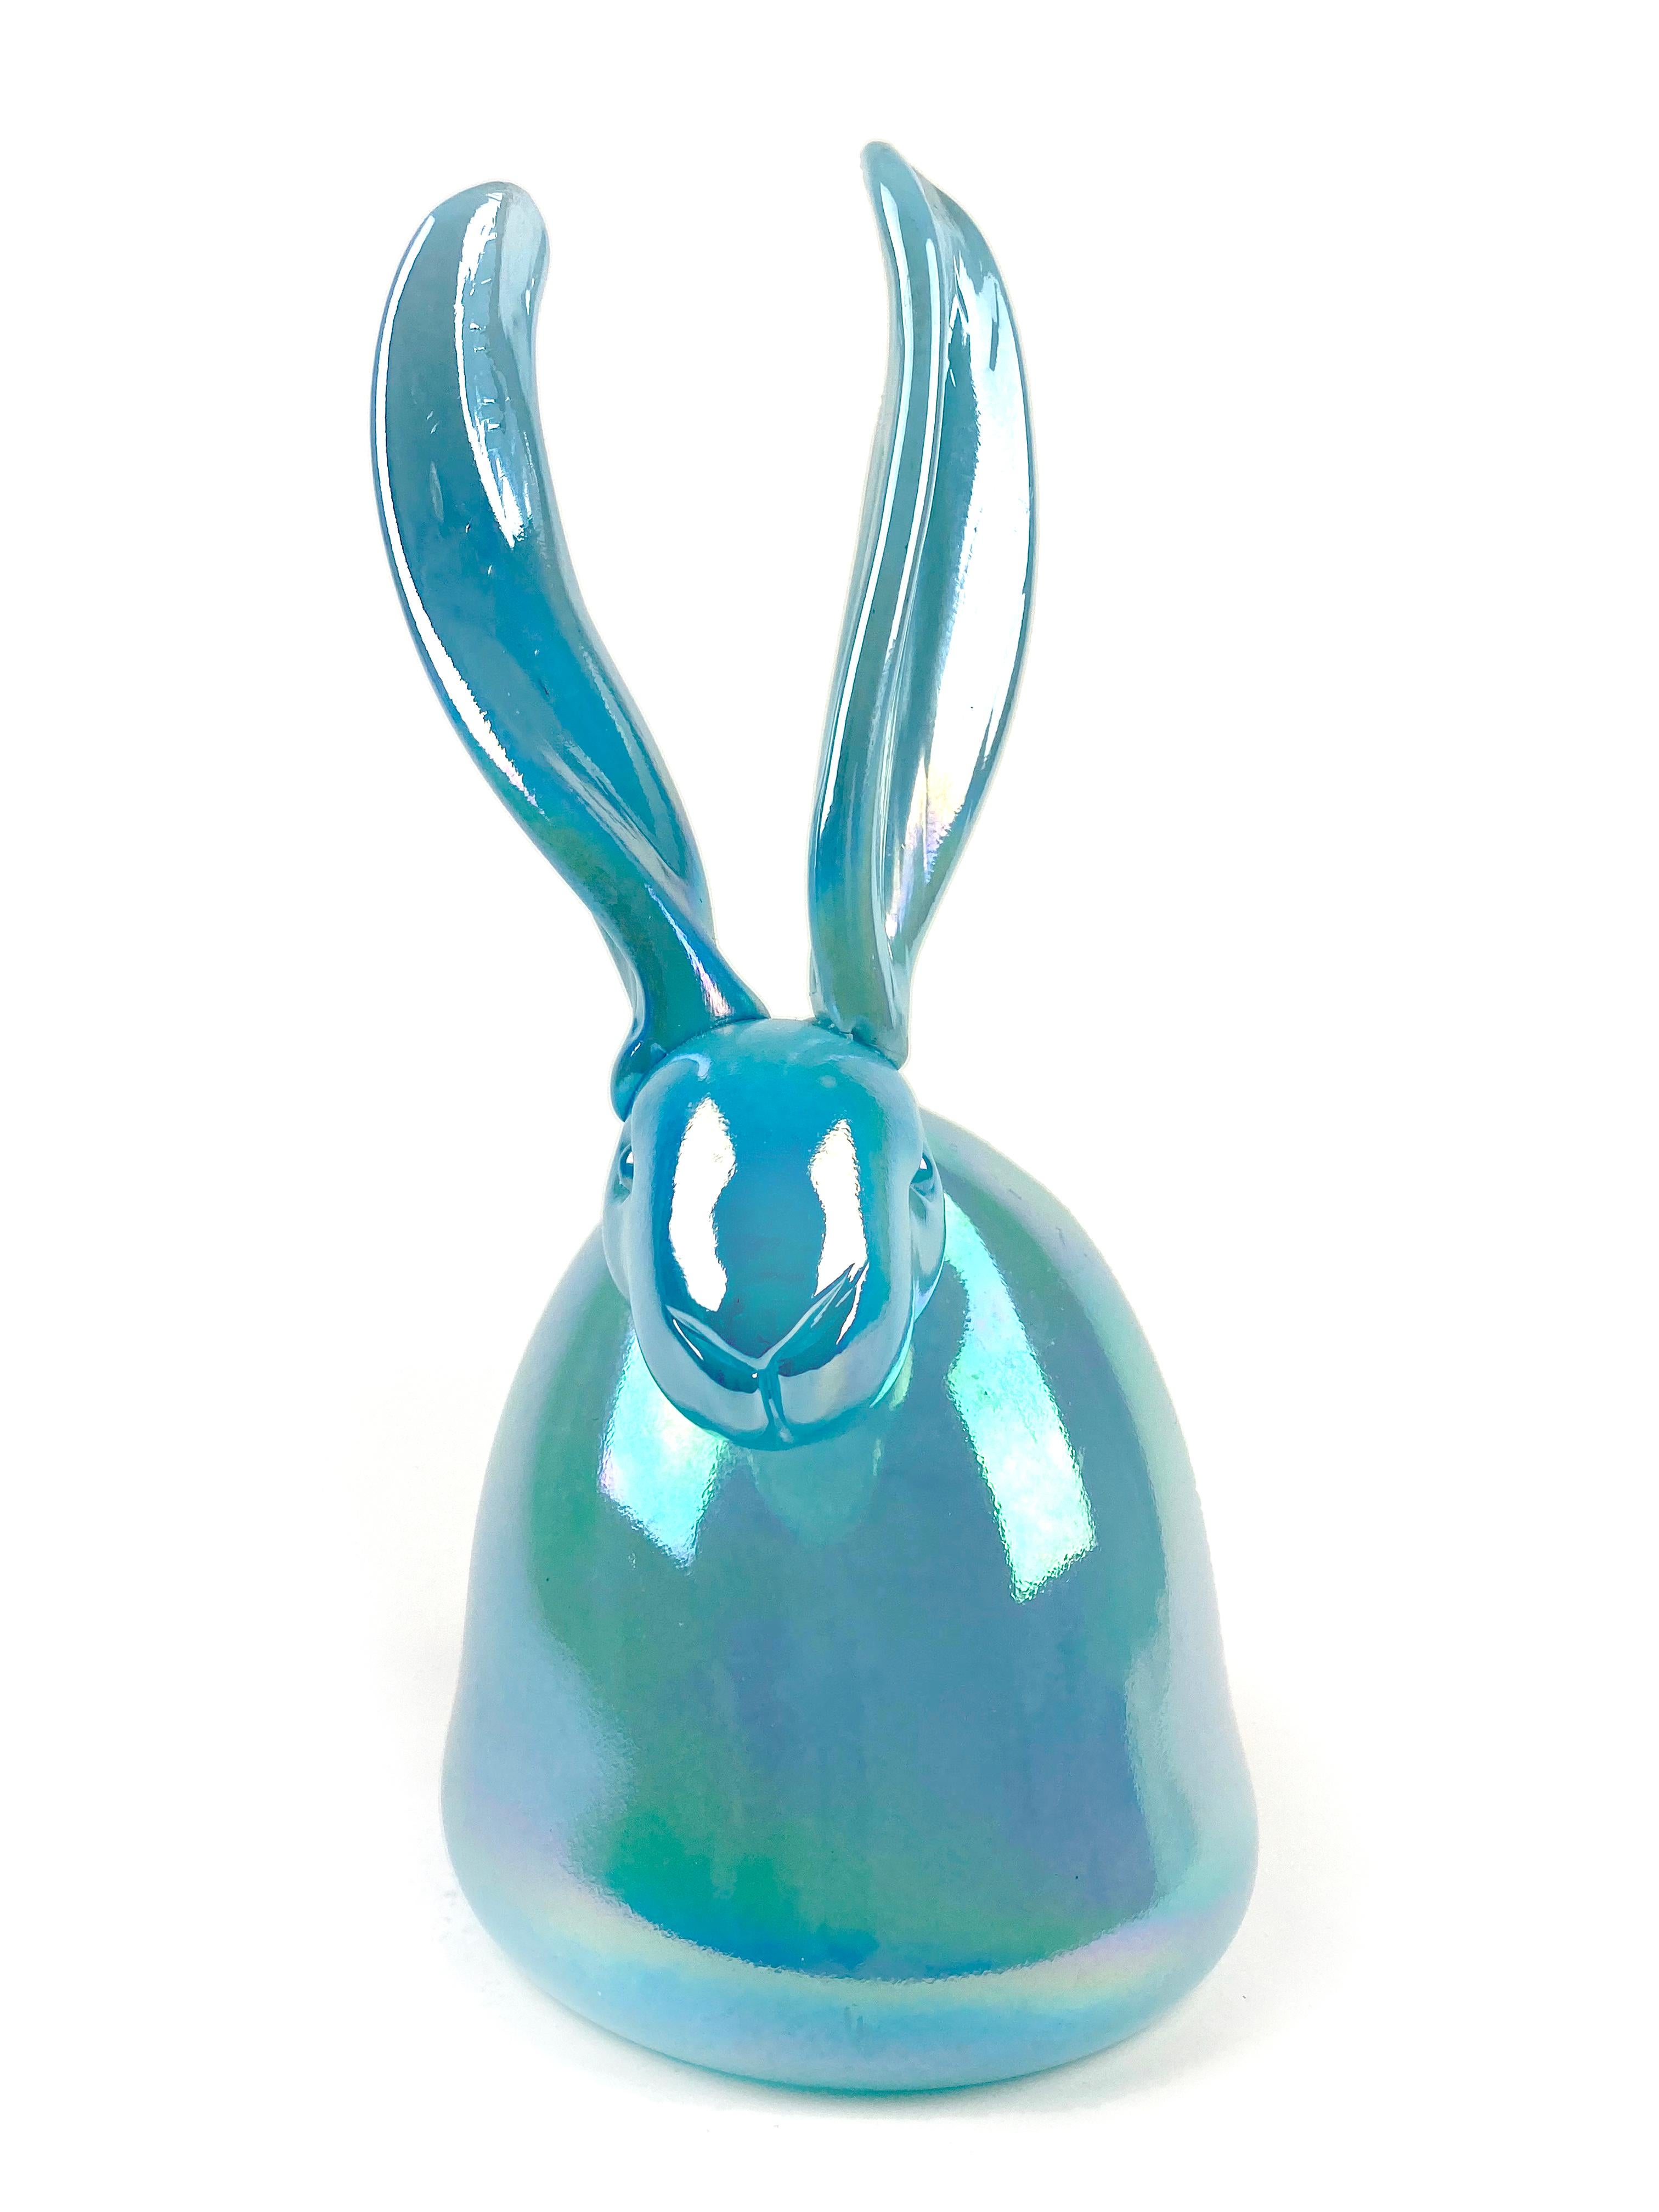 Turquoise Bunny "Bunny Sculpture" Unique Blown Glass Sculpture